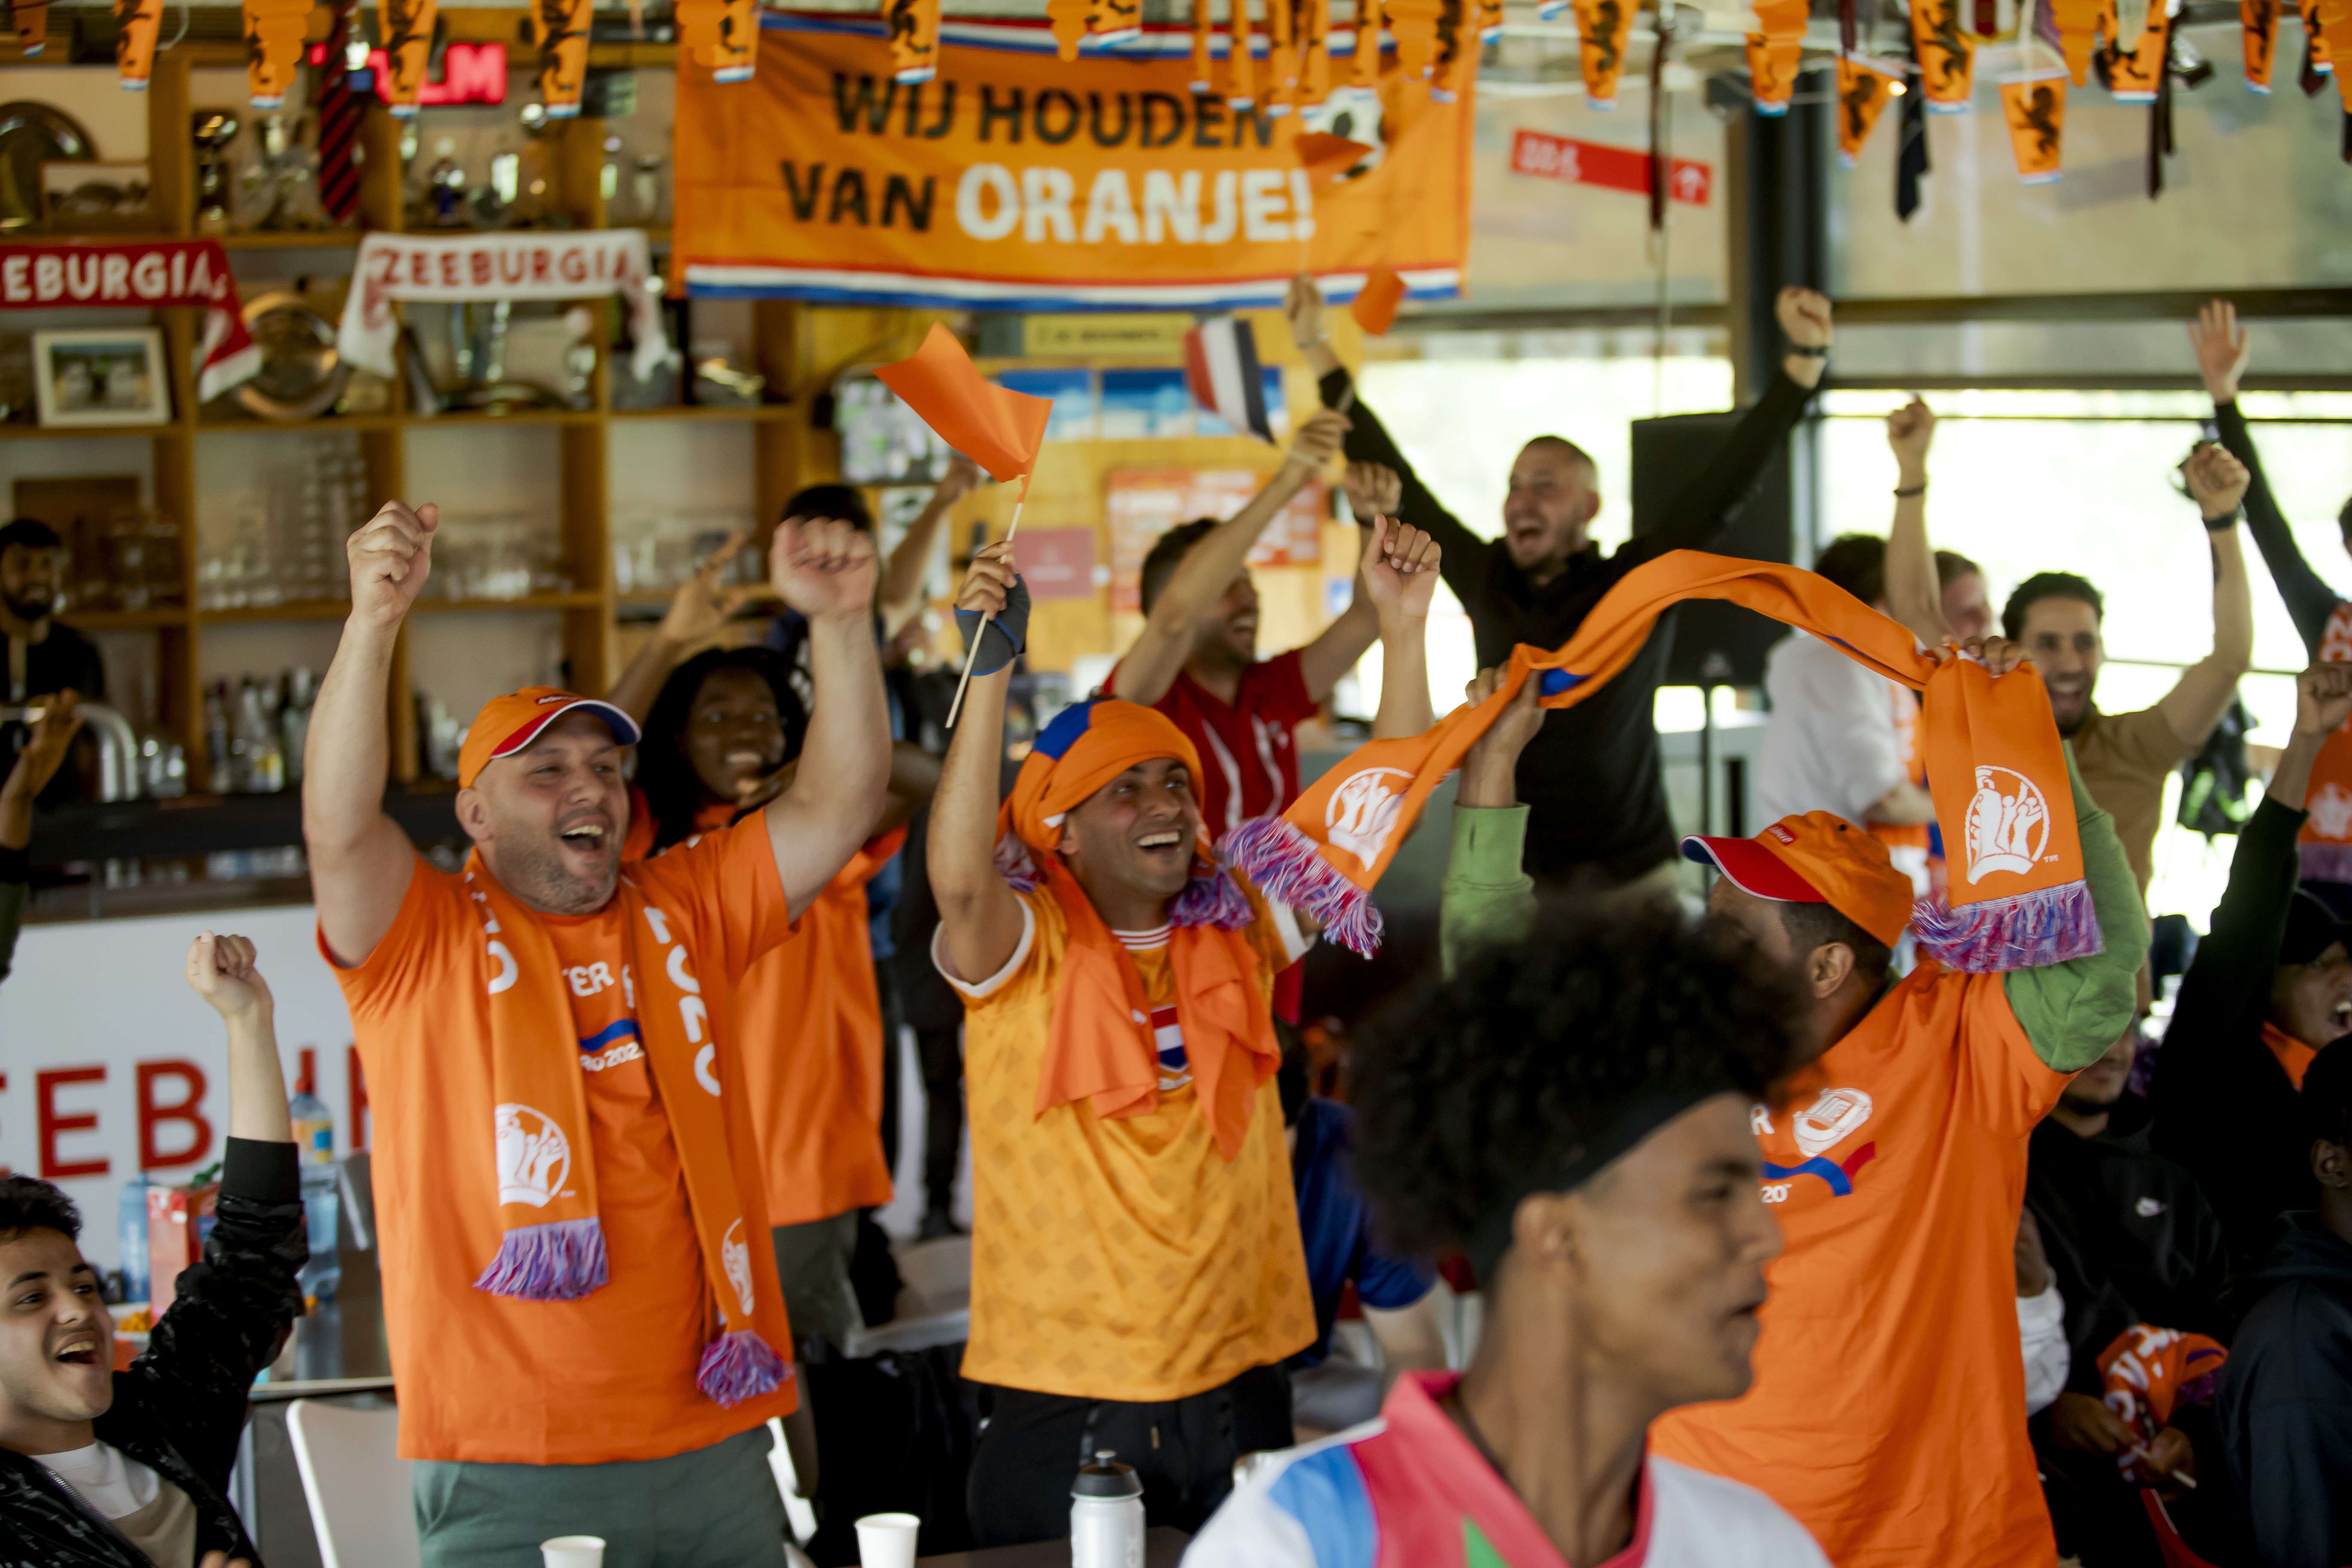 UNITY Cup brengt voetbal, vluchtelingen en verenigingsleven samen